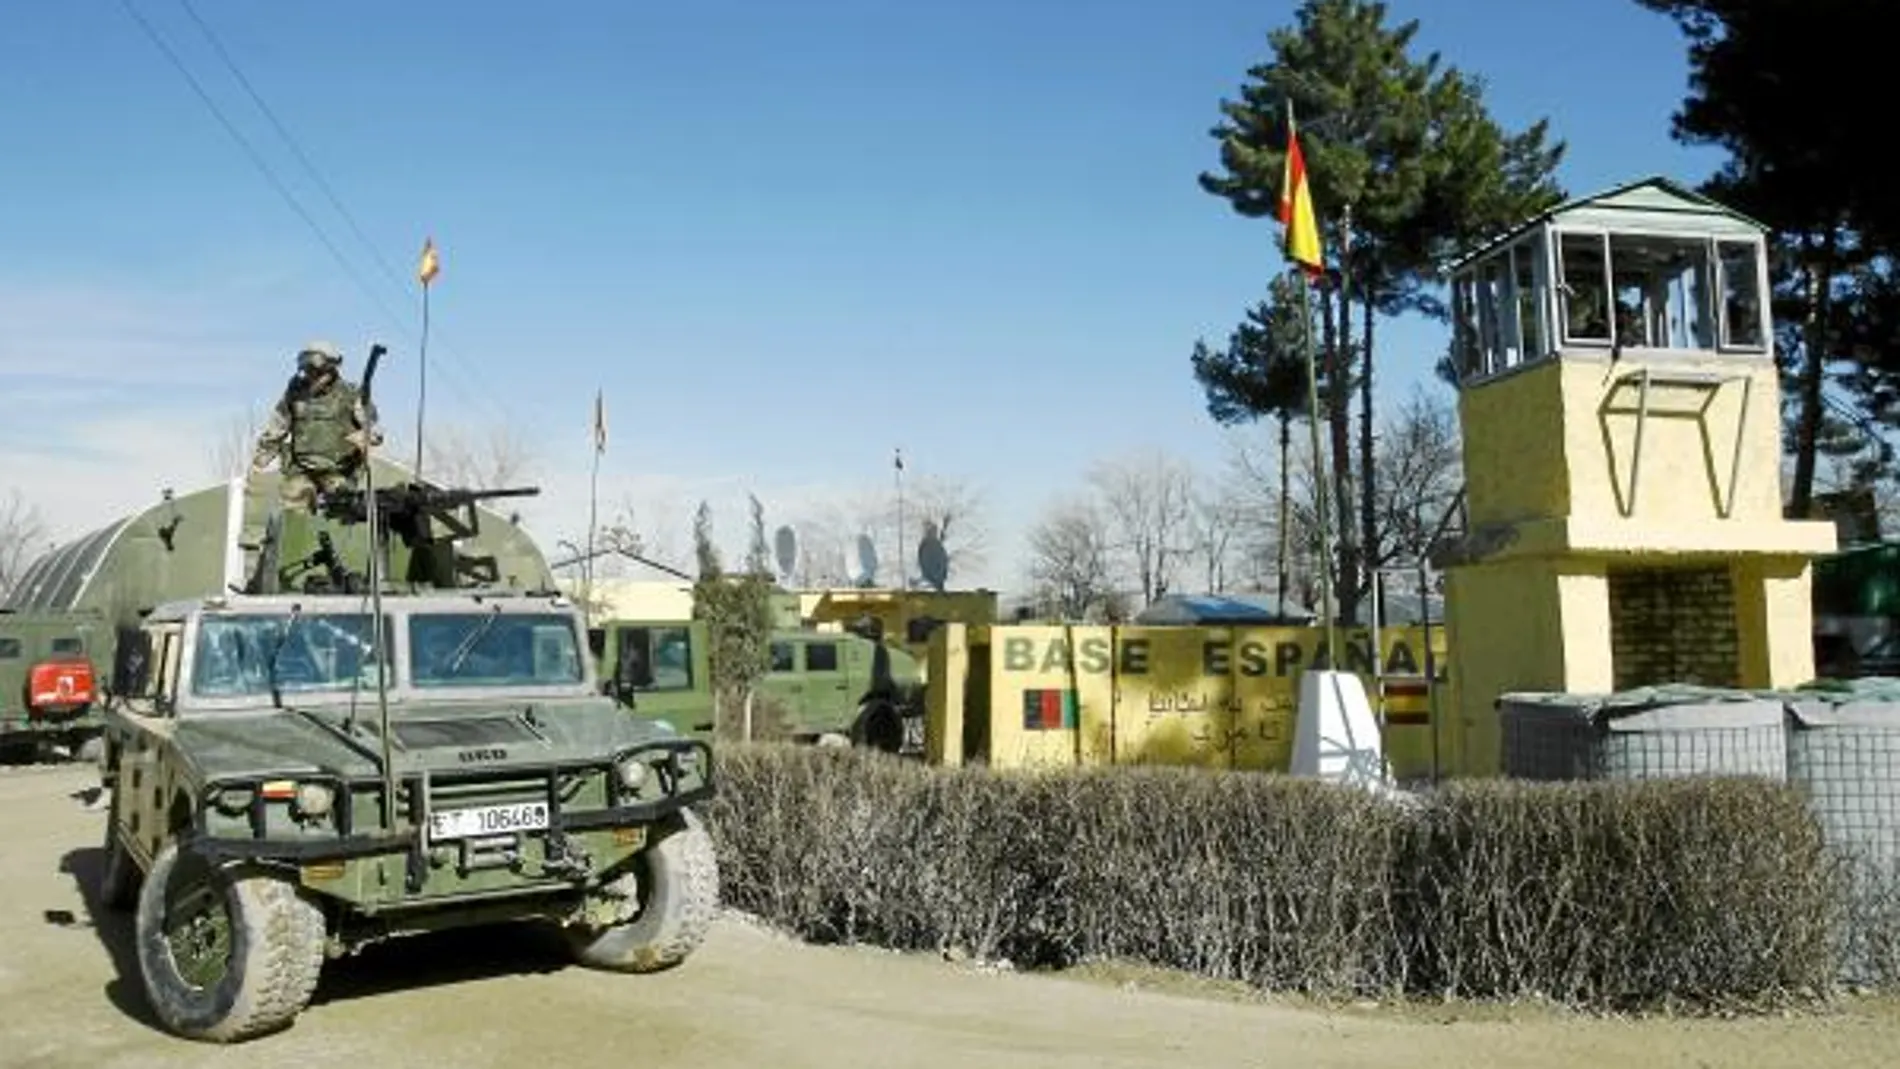 La base española de Qala-i-Now sirve ahora de «academia» para la Policía afgana